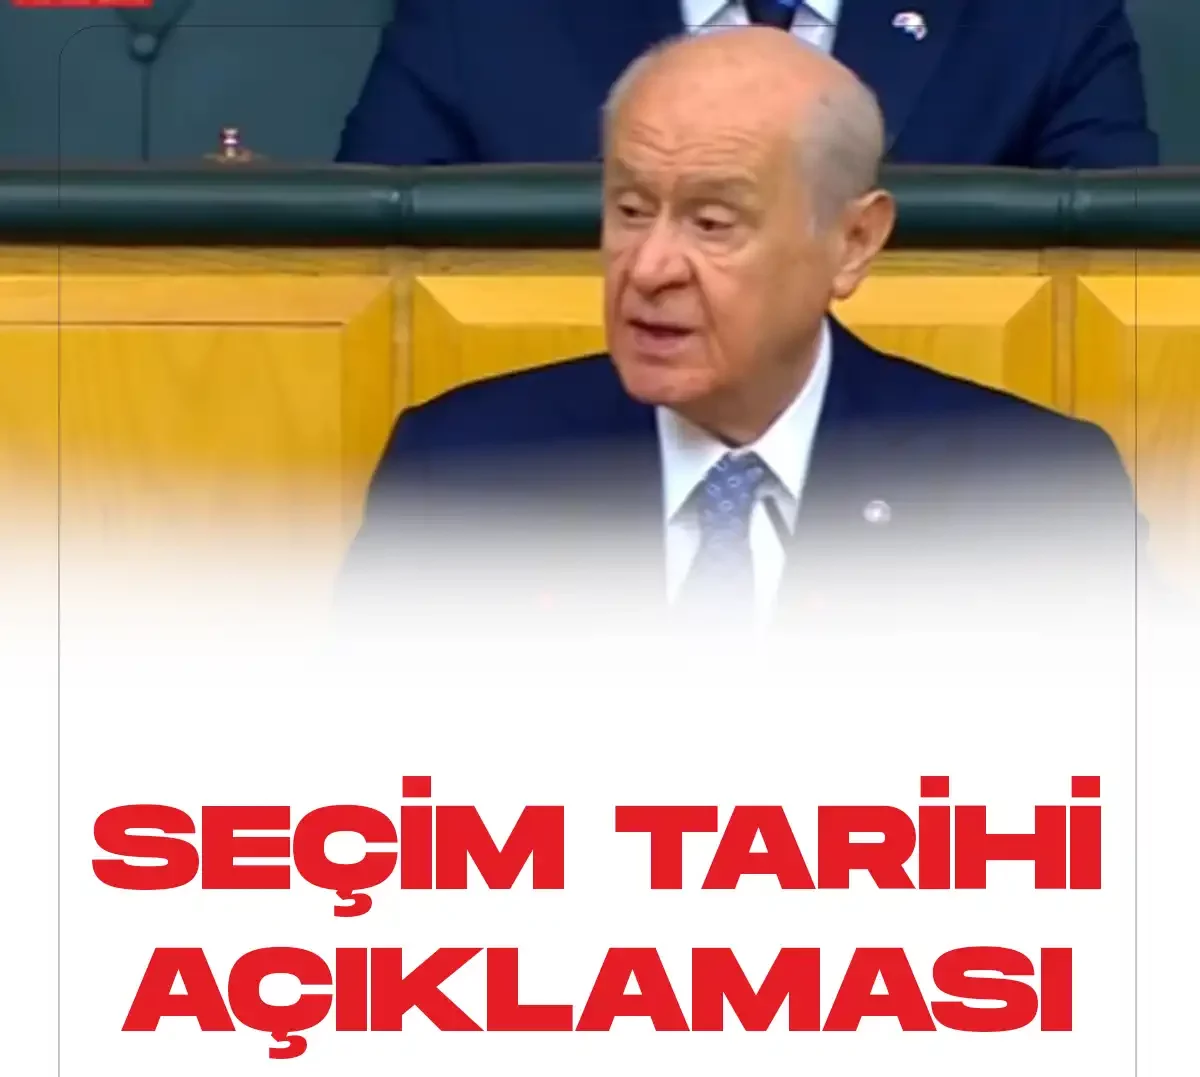 MHP Genel Başkanı Bahçeliden seçim tarihi açıklaması.